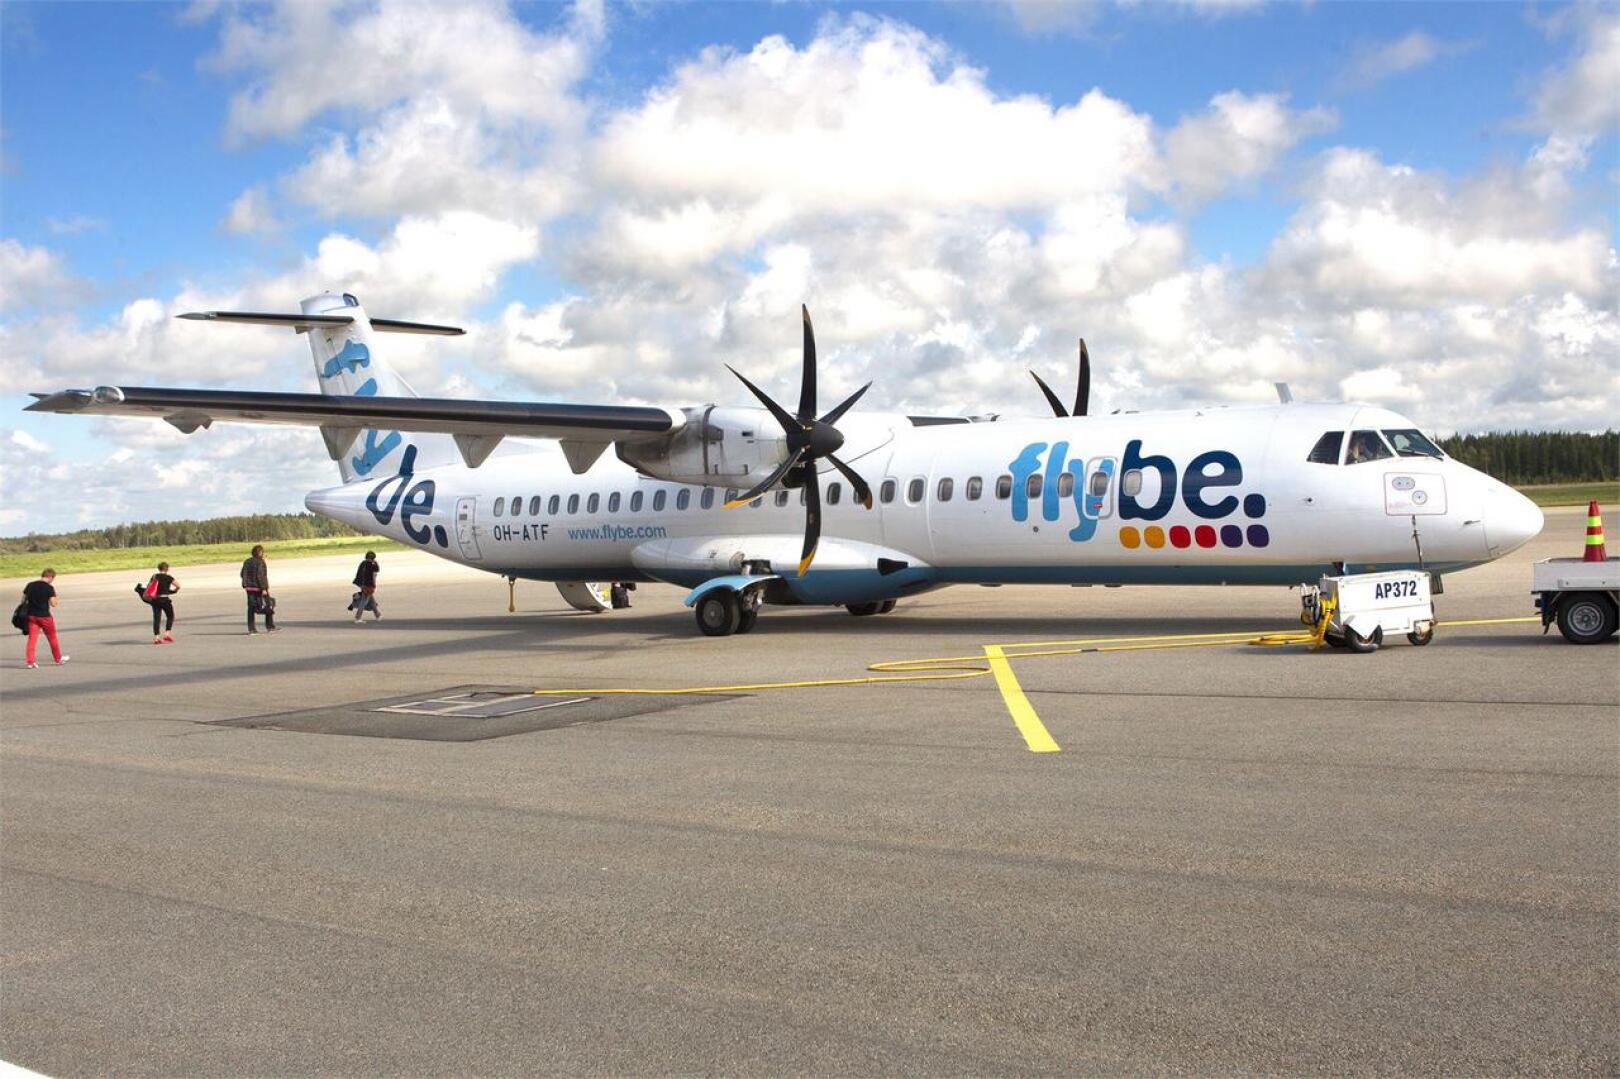 ATR-72 on kaksimoottorinen potkuriturbiinikone, johon mahtuu Norran istuinkonfiguraatioissa 68-72 matkustajaa. Kotimaan lentoliikenteen taloudellisen turbulenssin vuoksi Norran koneyksilöt lensivät aiemmin Flybe Finlandin ja osa niistä myös Finncomm Airlinesin väreissä.